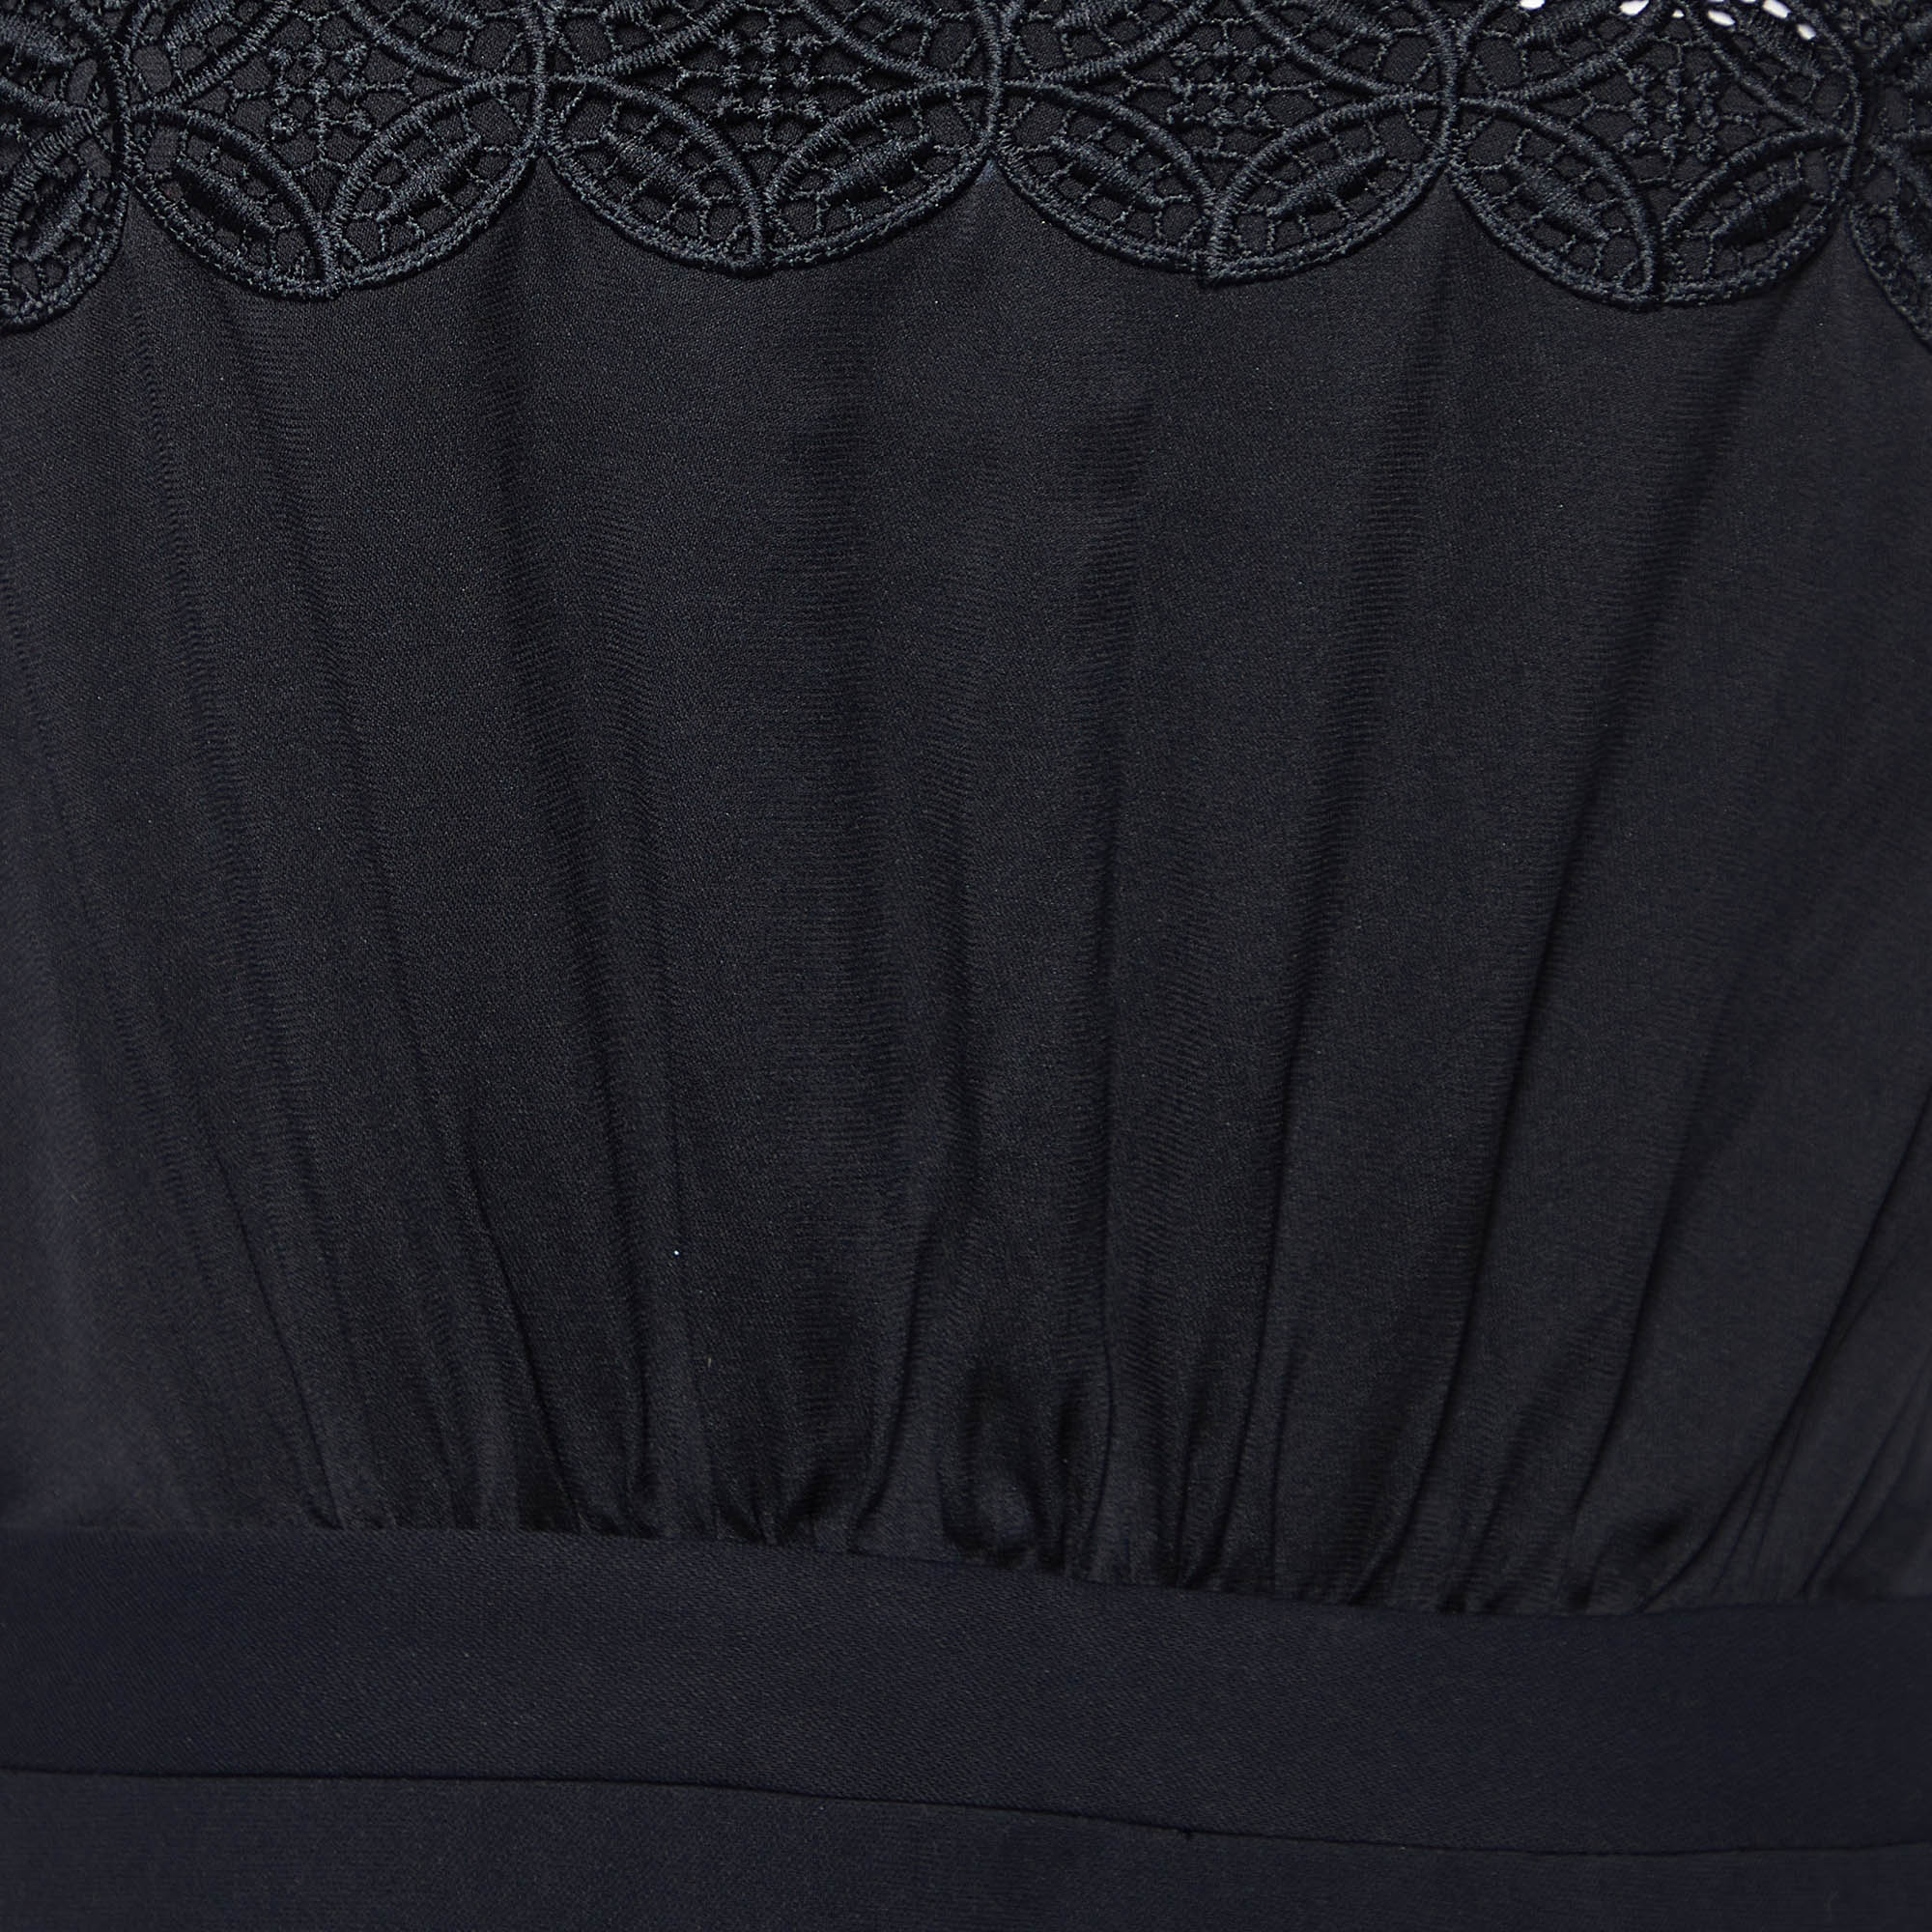 Self-Portrait Black Crepe & Lace Off Shoulder Mini Dress M